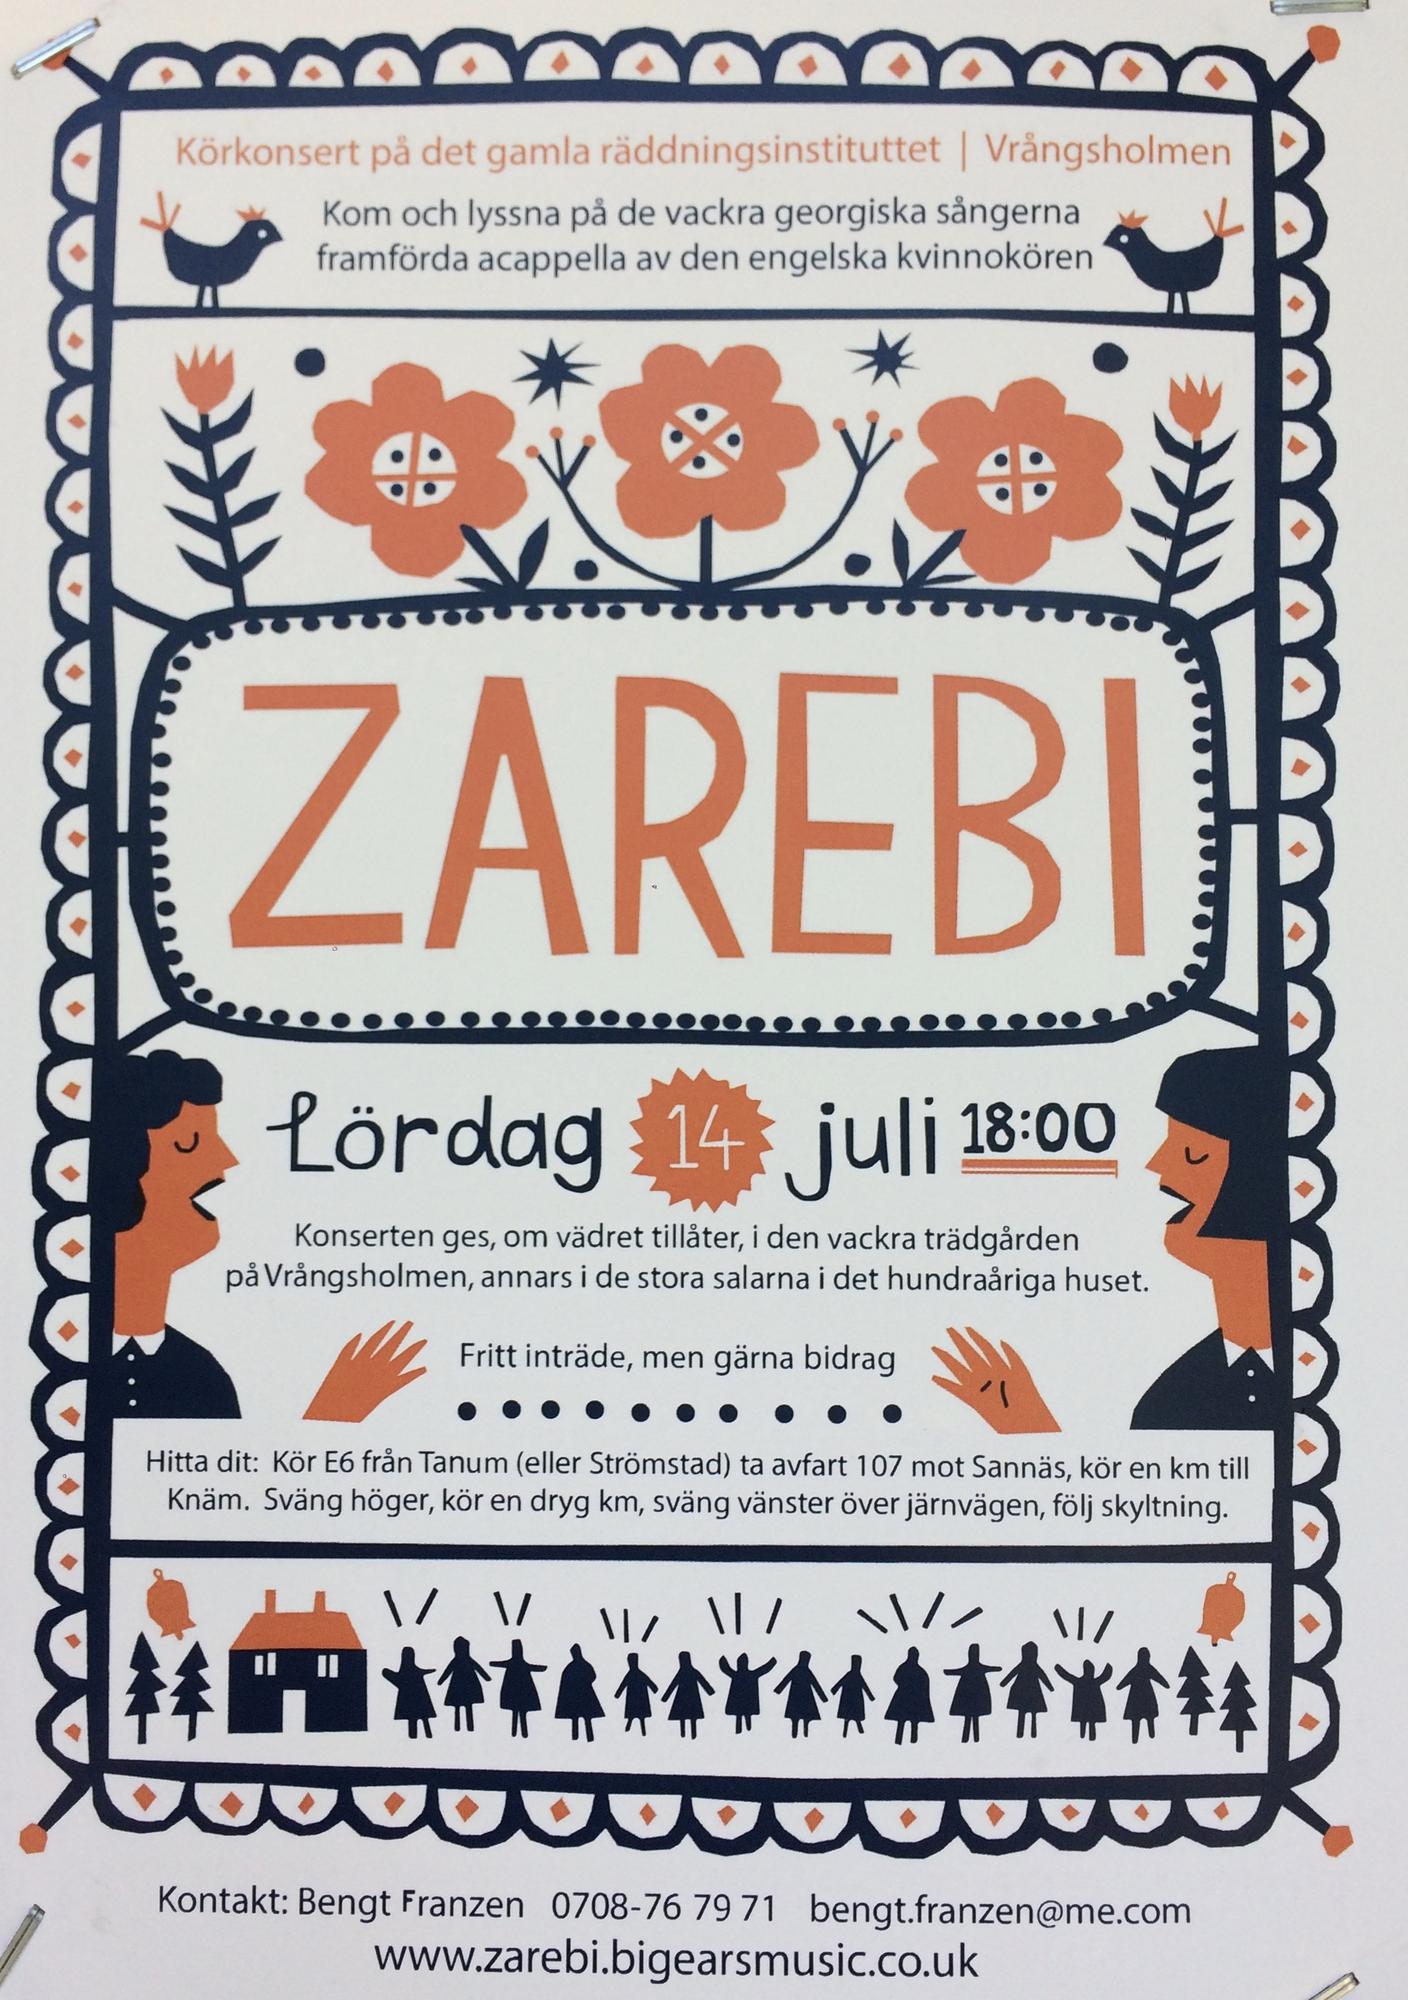 Blog - Zarebi